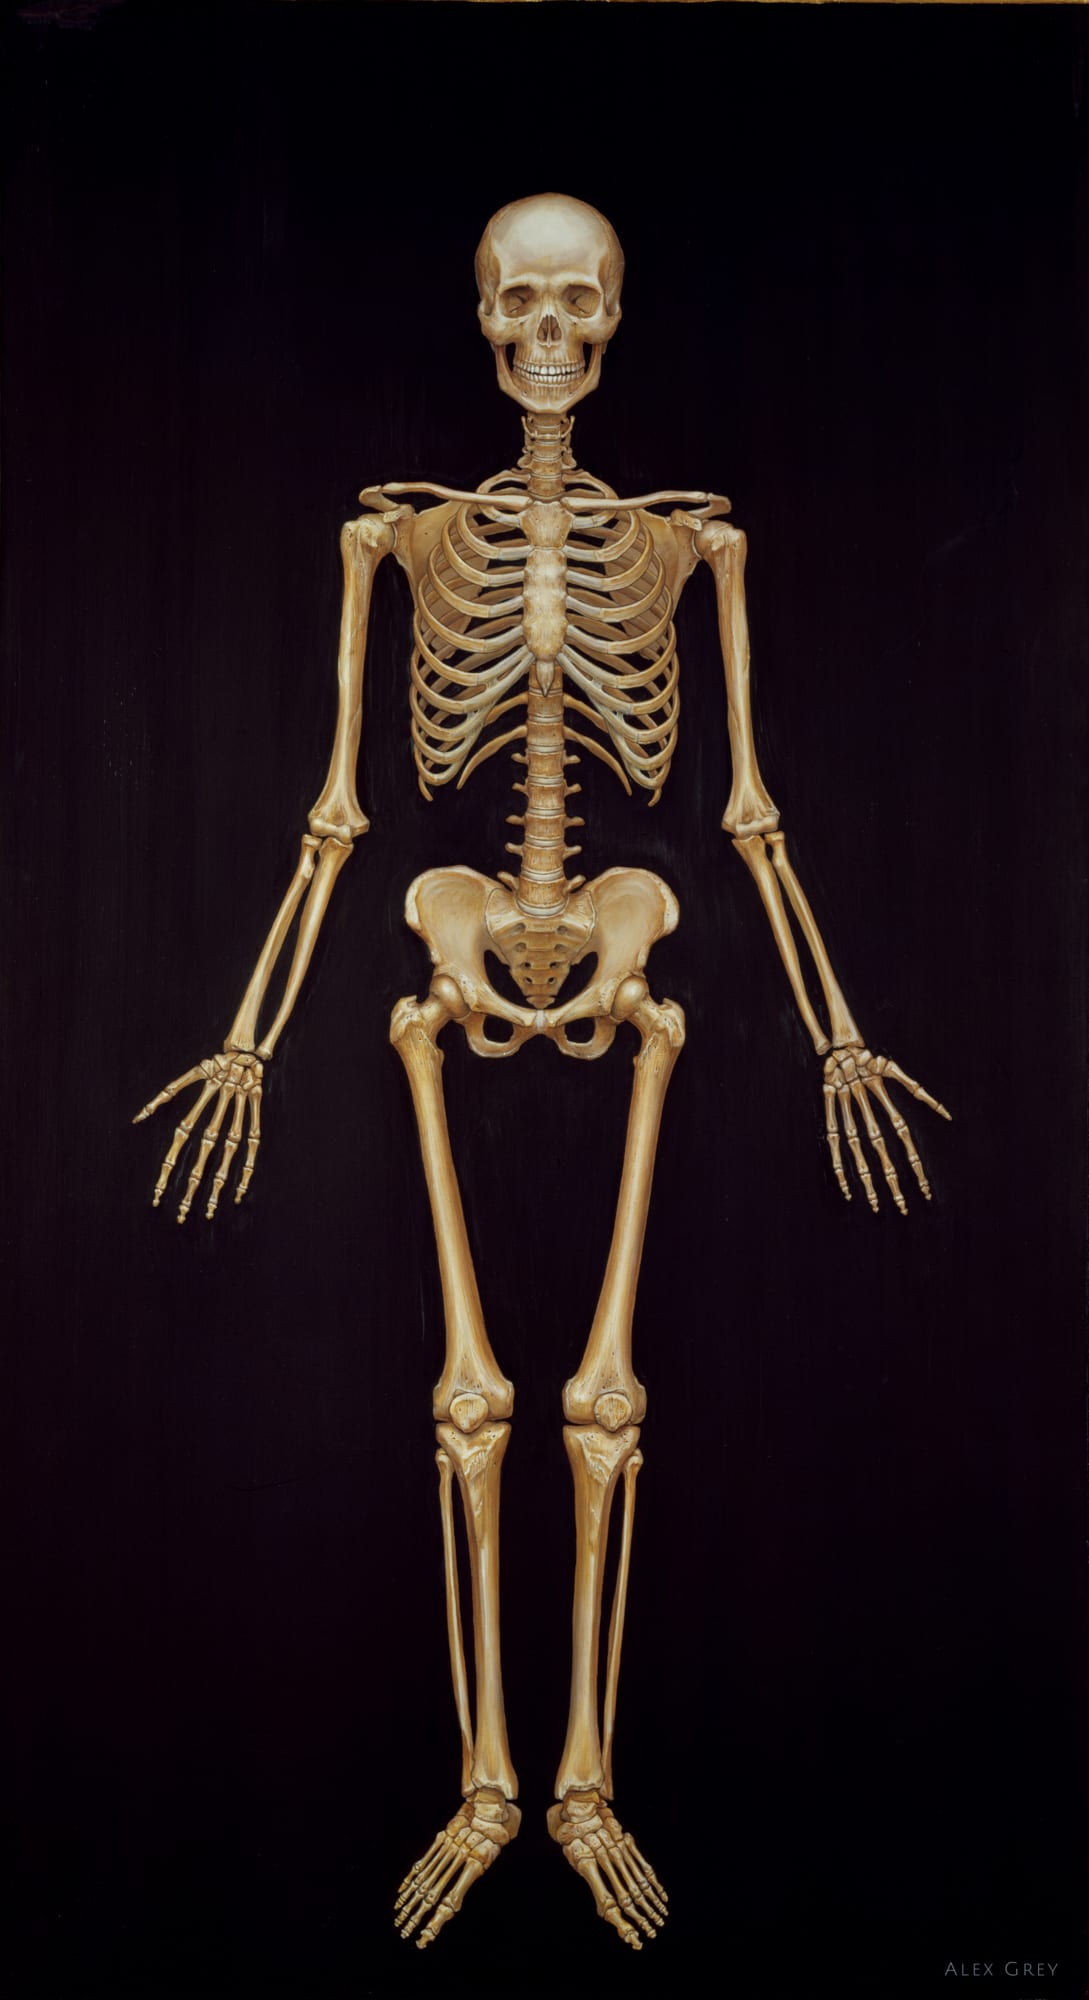 Skeletal System, 1979